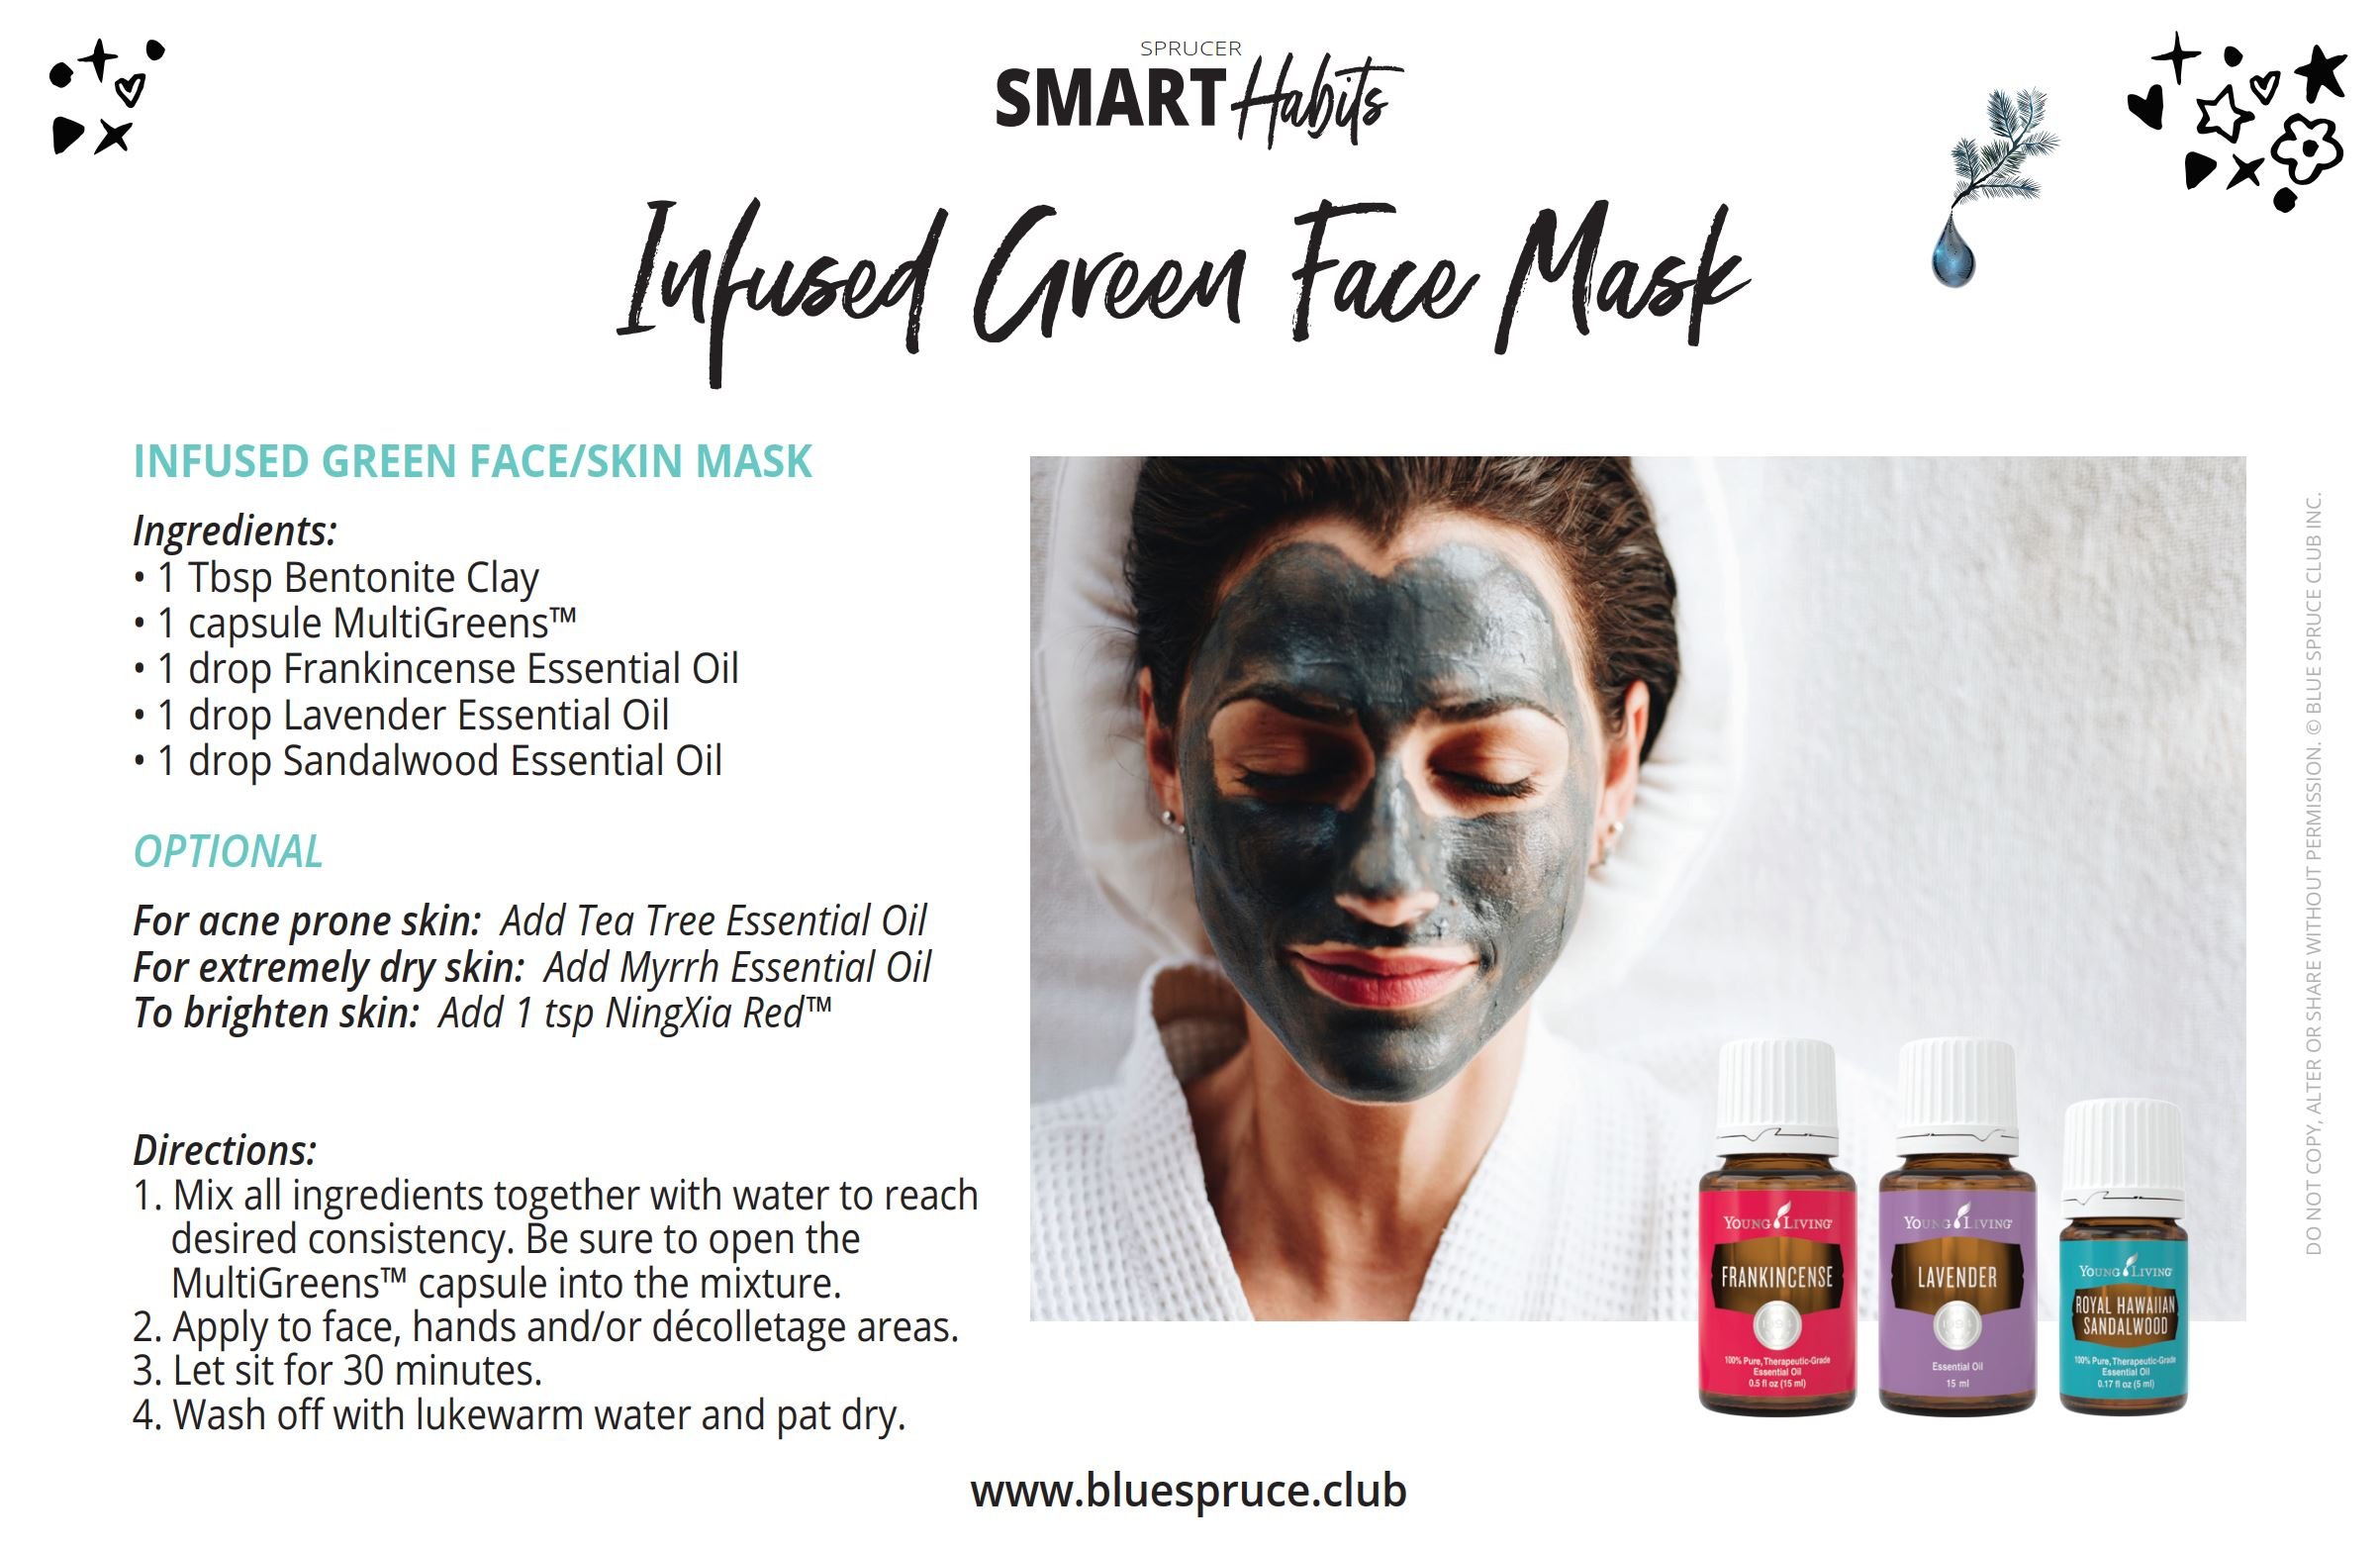 SMART HABITS_DIY_Infused Green Face Mask.jpg